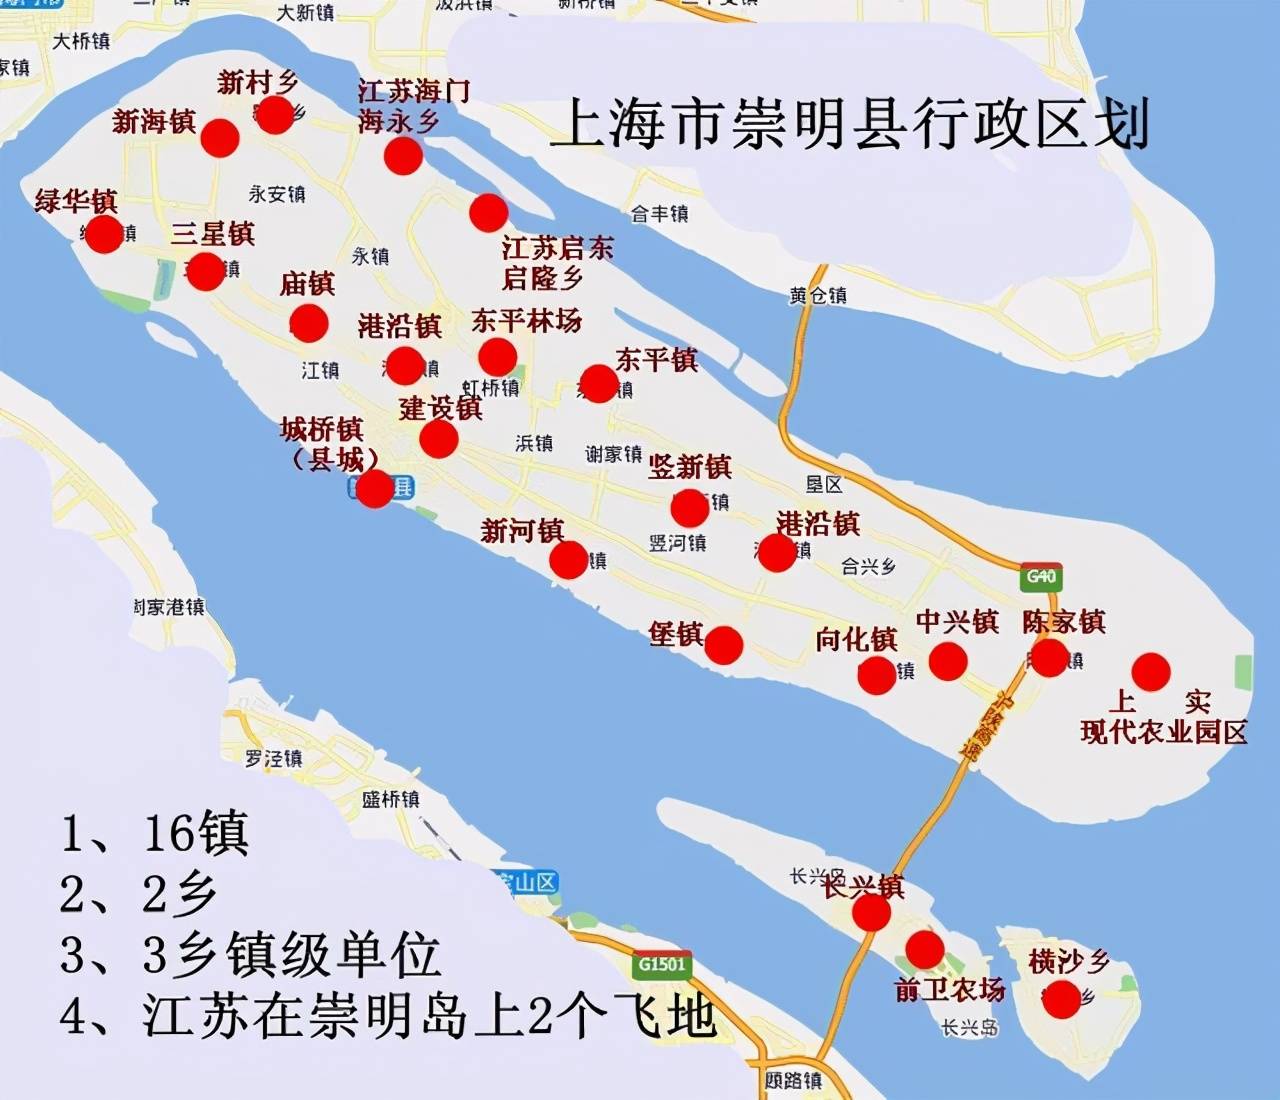 原创崇明岛大部分属于上海为何海永镇和启隆镇却属于江苏